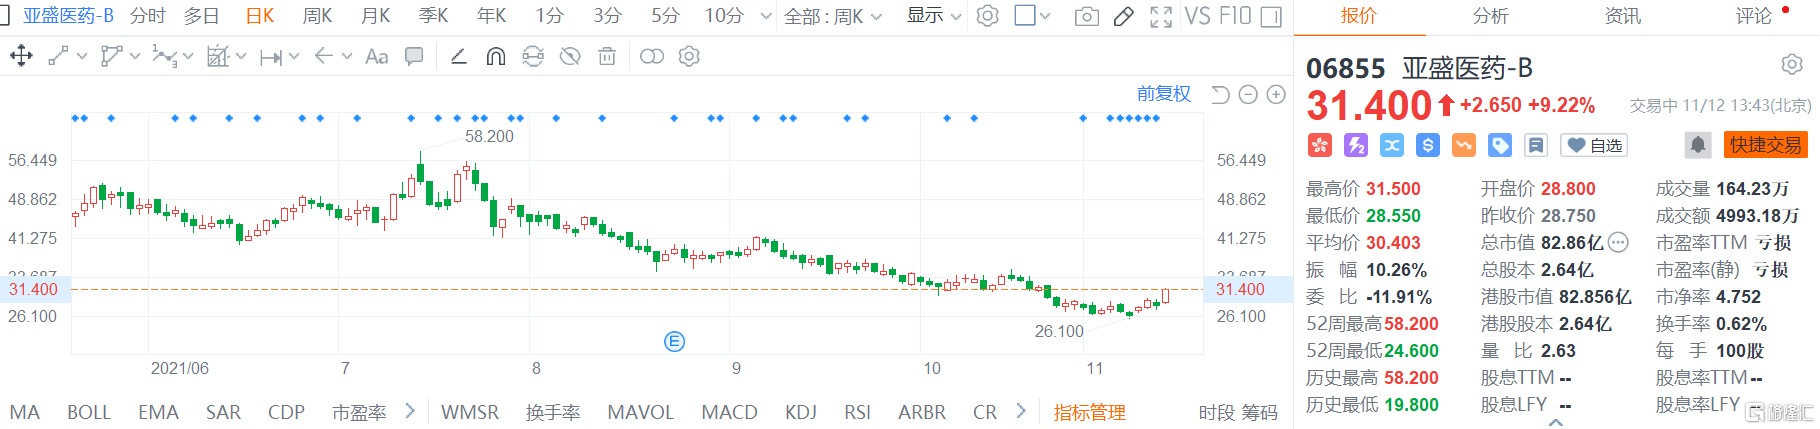 亚盛医药-B(6855.HK)涨超9% 连续五个交易日回购股份